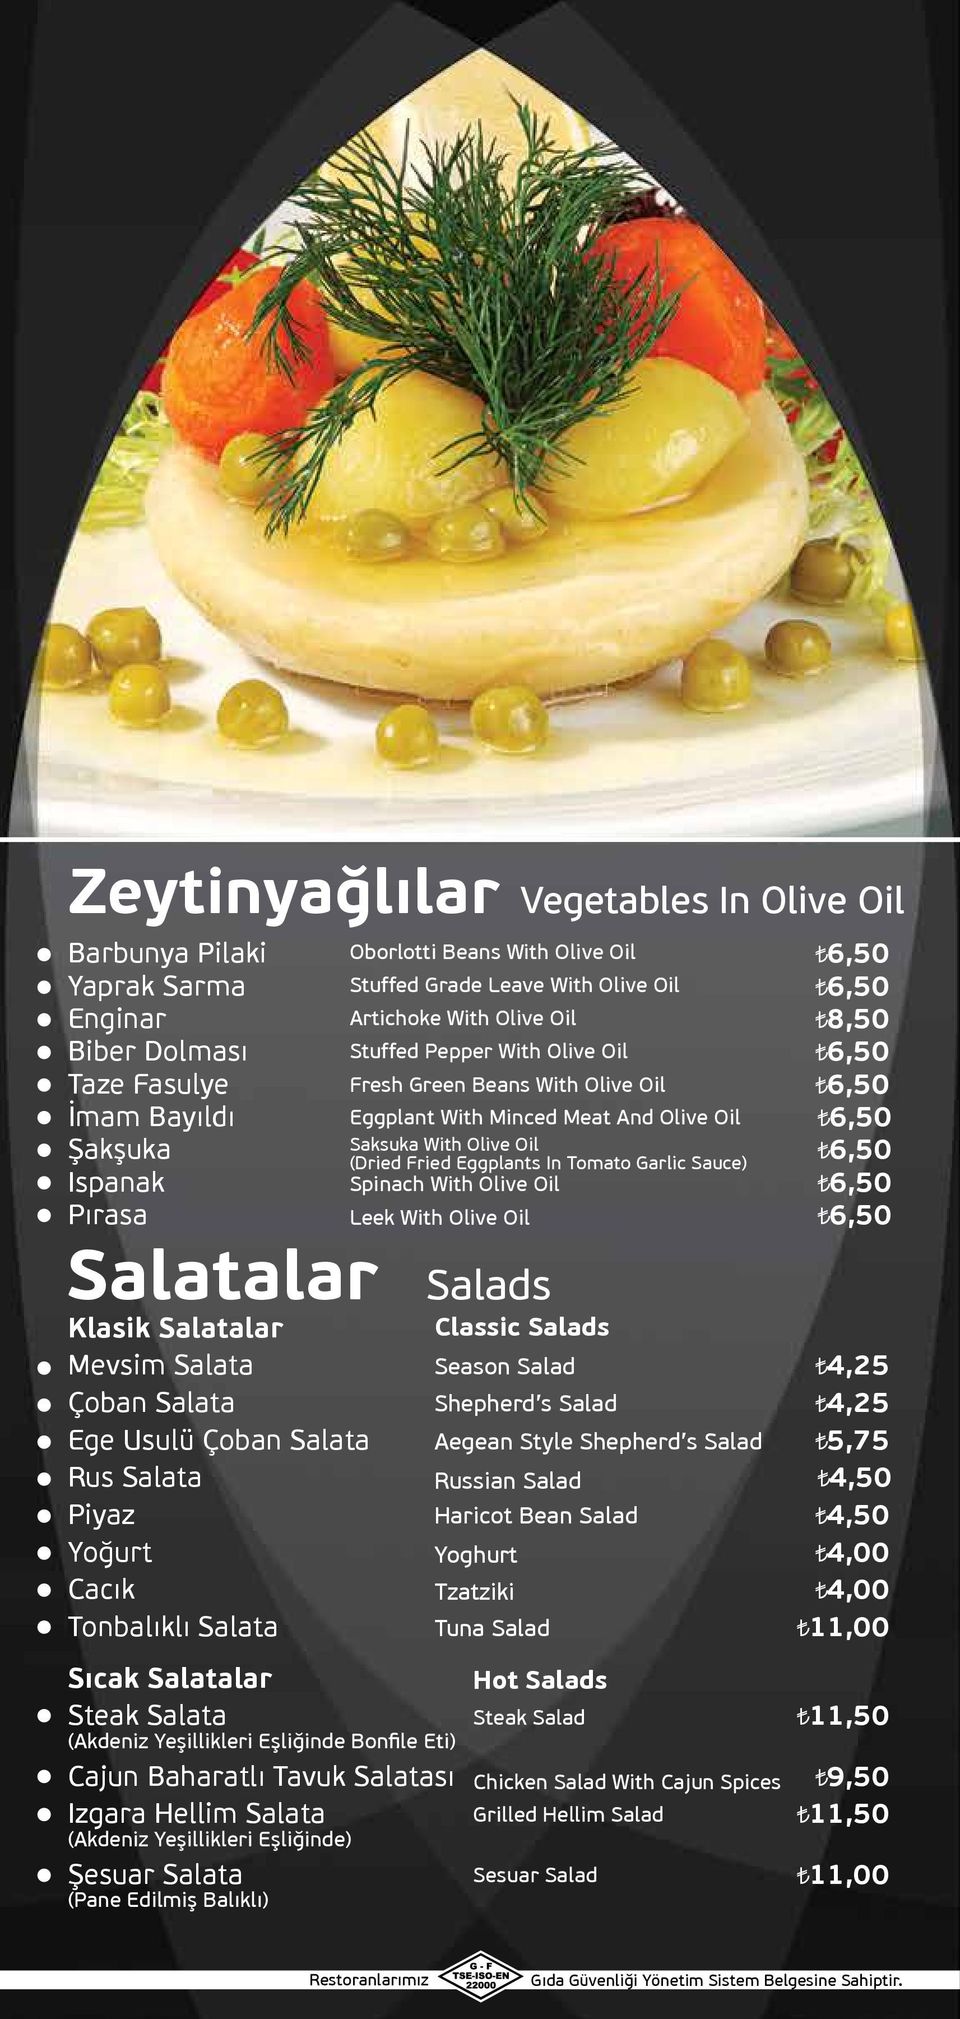 Ispanak Spinach With Olive Oil Pırasa Leek With Olive Oil Salatalar Salads Klasik Salatalar Mevsim Salata Classic Salads Season Salad Çoban Salata Shepherd s Salad Ege Usulü Çoban Salata Aegean Style